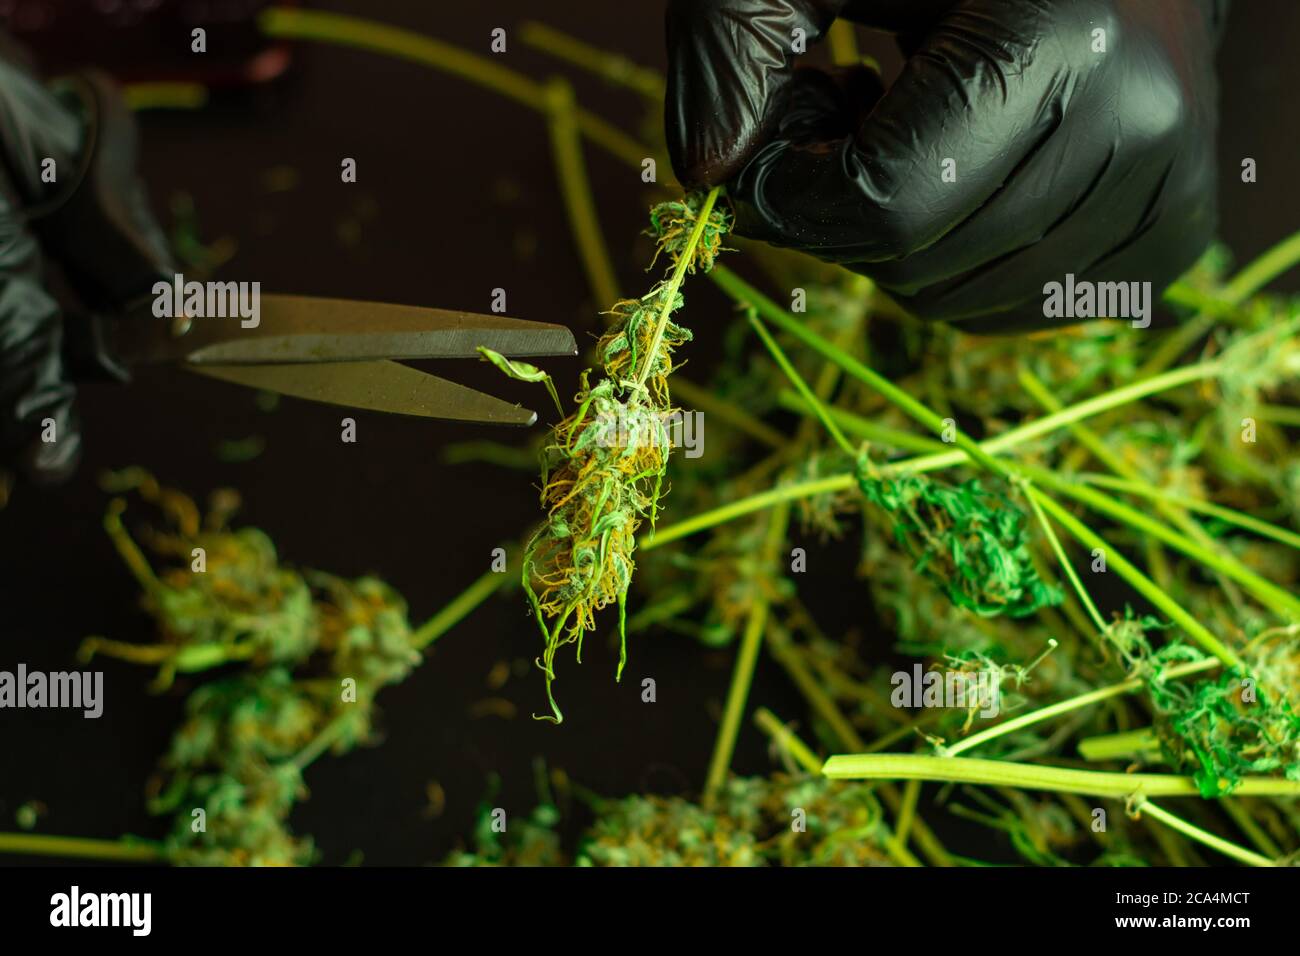 Verarbeitung von Cannabis für kommerzielle Zwecke. Schneiden und Trimmen von Marihuana-Pflanze. Mann in schwarzen Handschuhen mit Schere. THC Drogenkonsum. Cannabisknospen Stockfoto